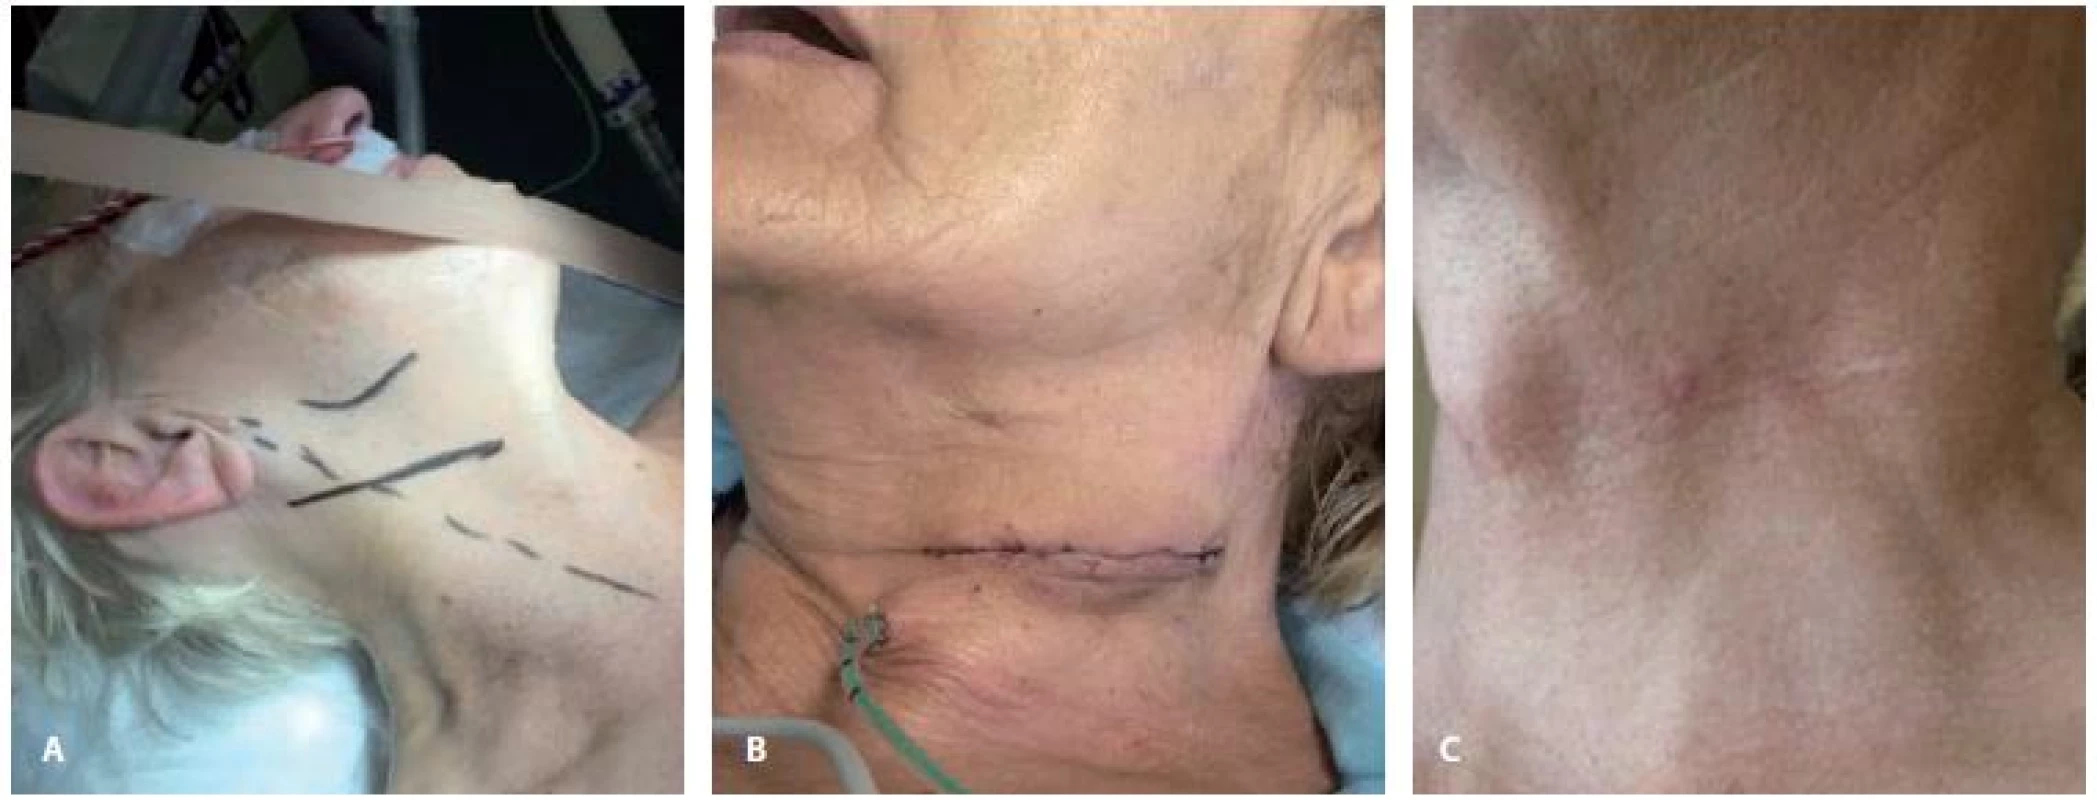 Předoperační (A), perioperační (B) a pooperační (C) obraz při použití příčného kožního řezu u karotické endarterektomie.<br>
Fig. 3. Preoperative (A), perioperative (B) and postoperative (C) images of transverse skin incision during carotid endarterectomy.